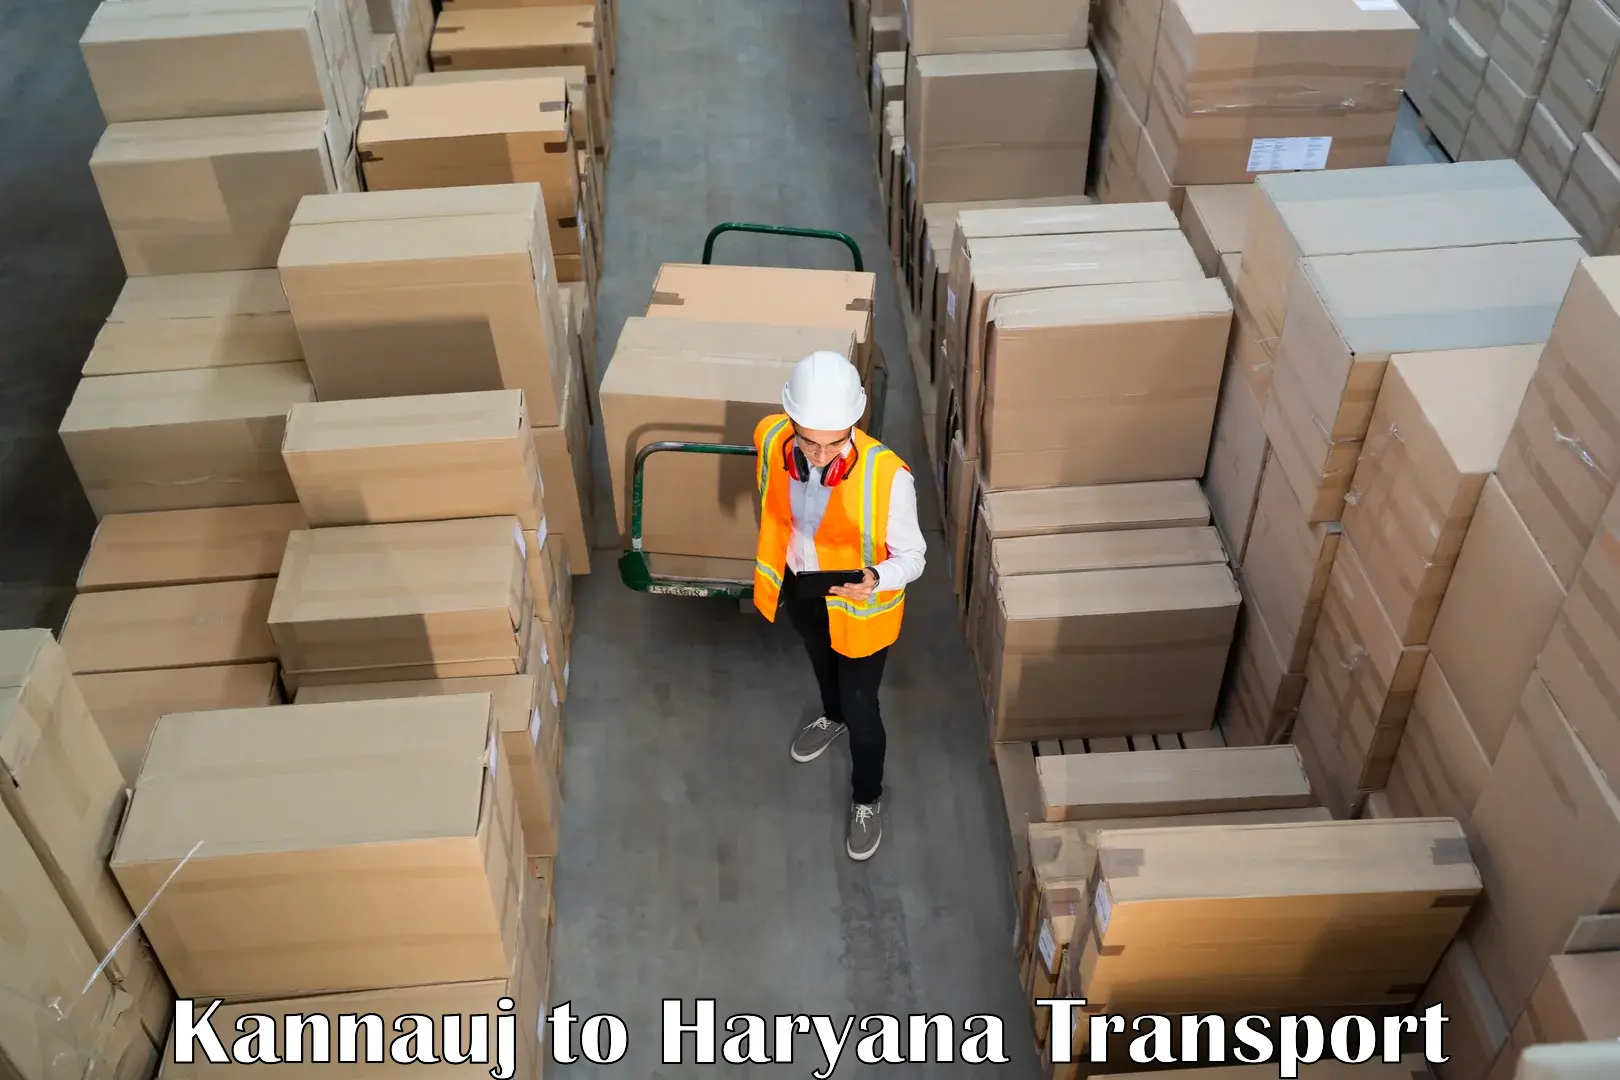 Cargo transport services Kannauj to Panipat